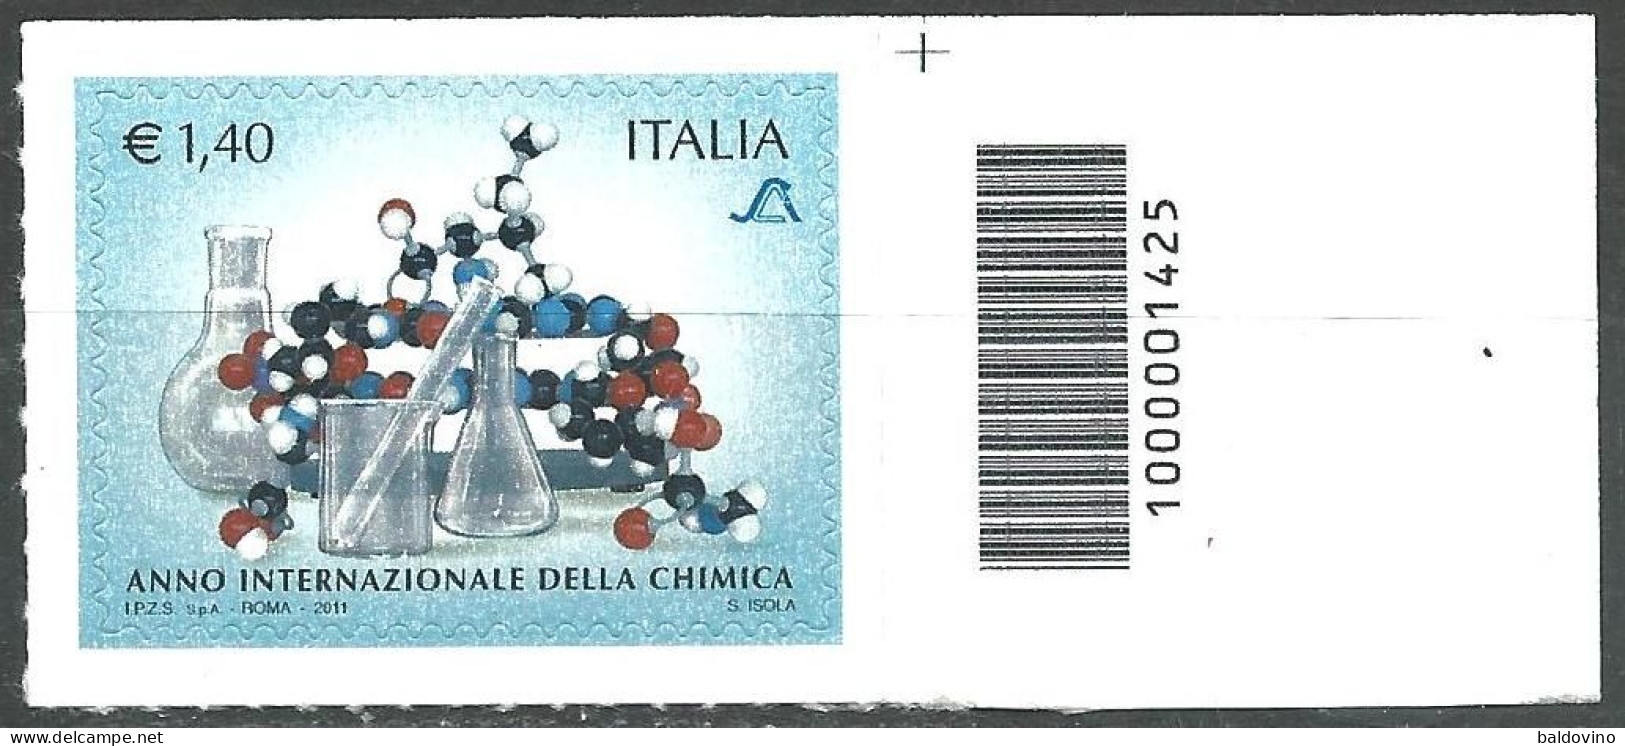 Italia 2011 9 valori codice a barre nuovi perfetti (vedi descrizione)